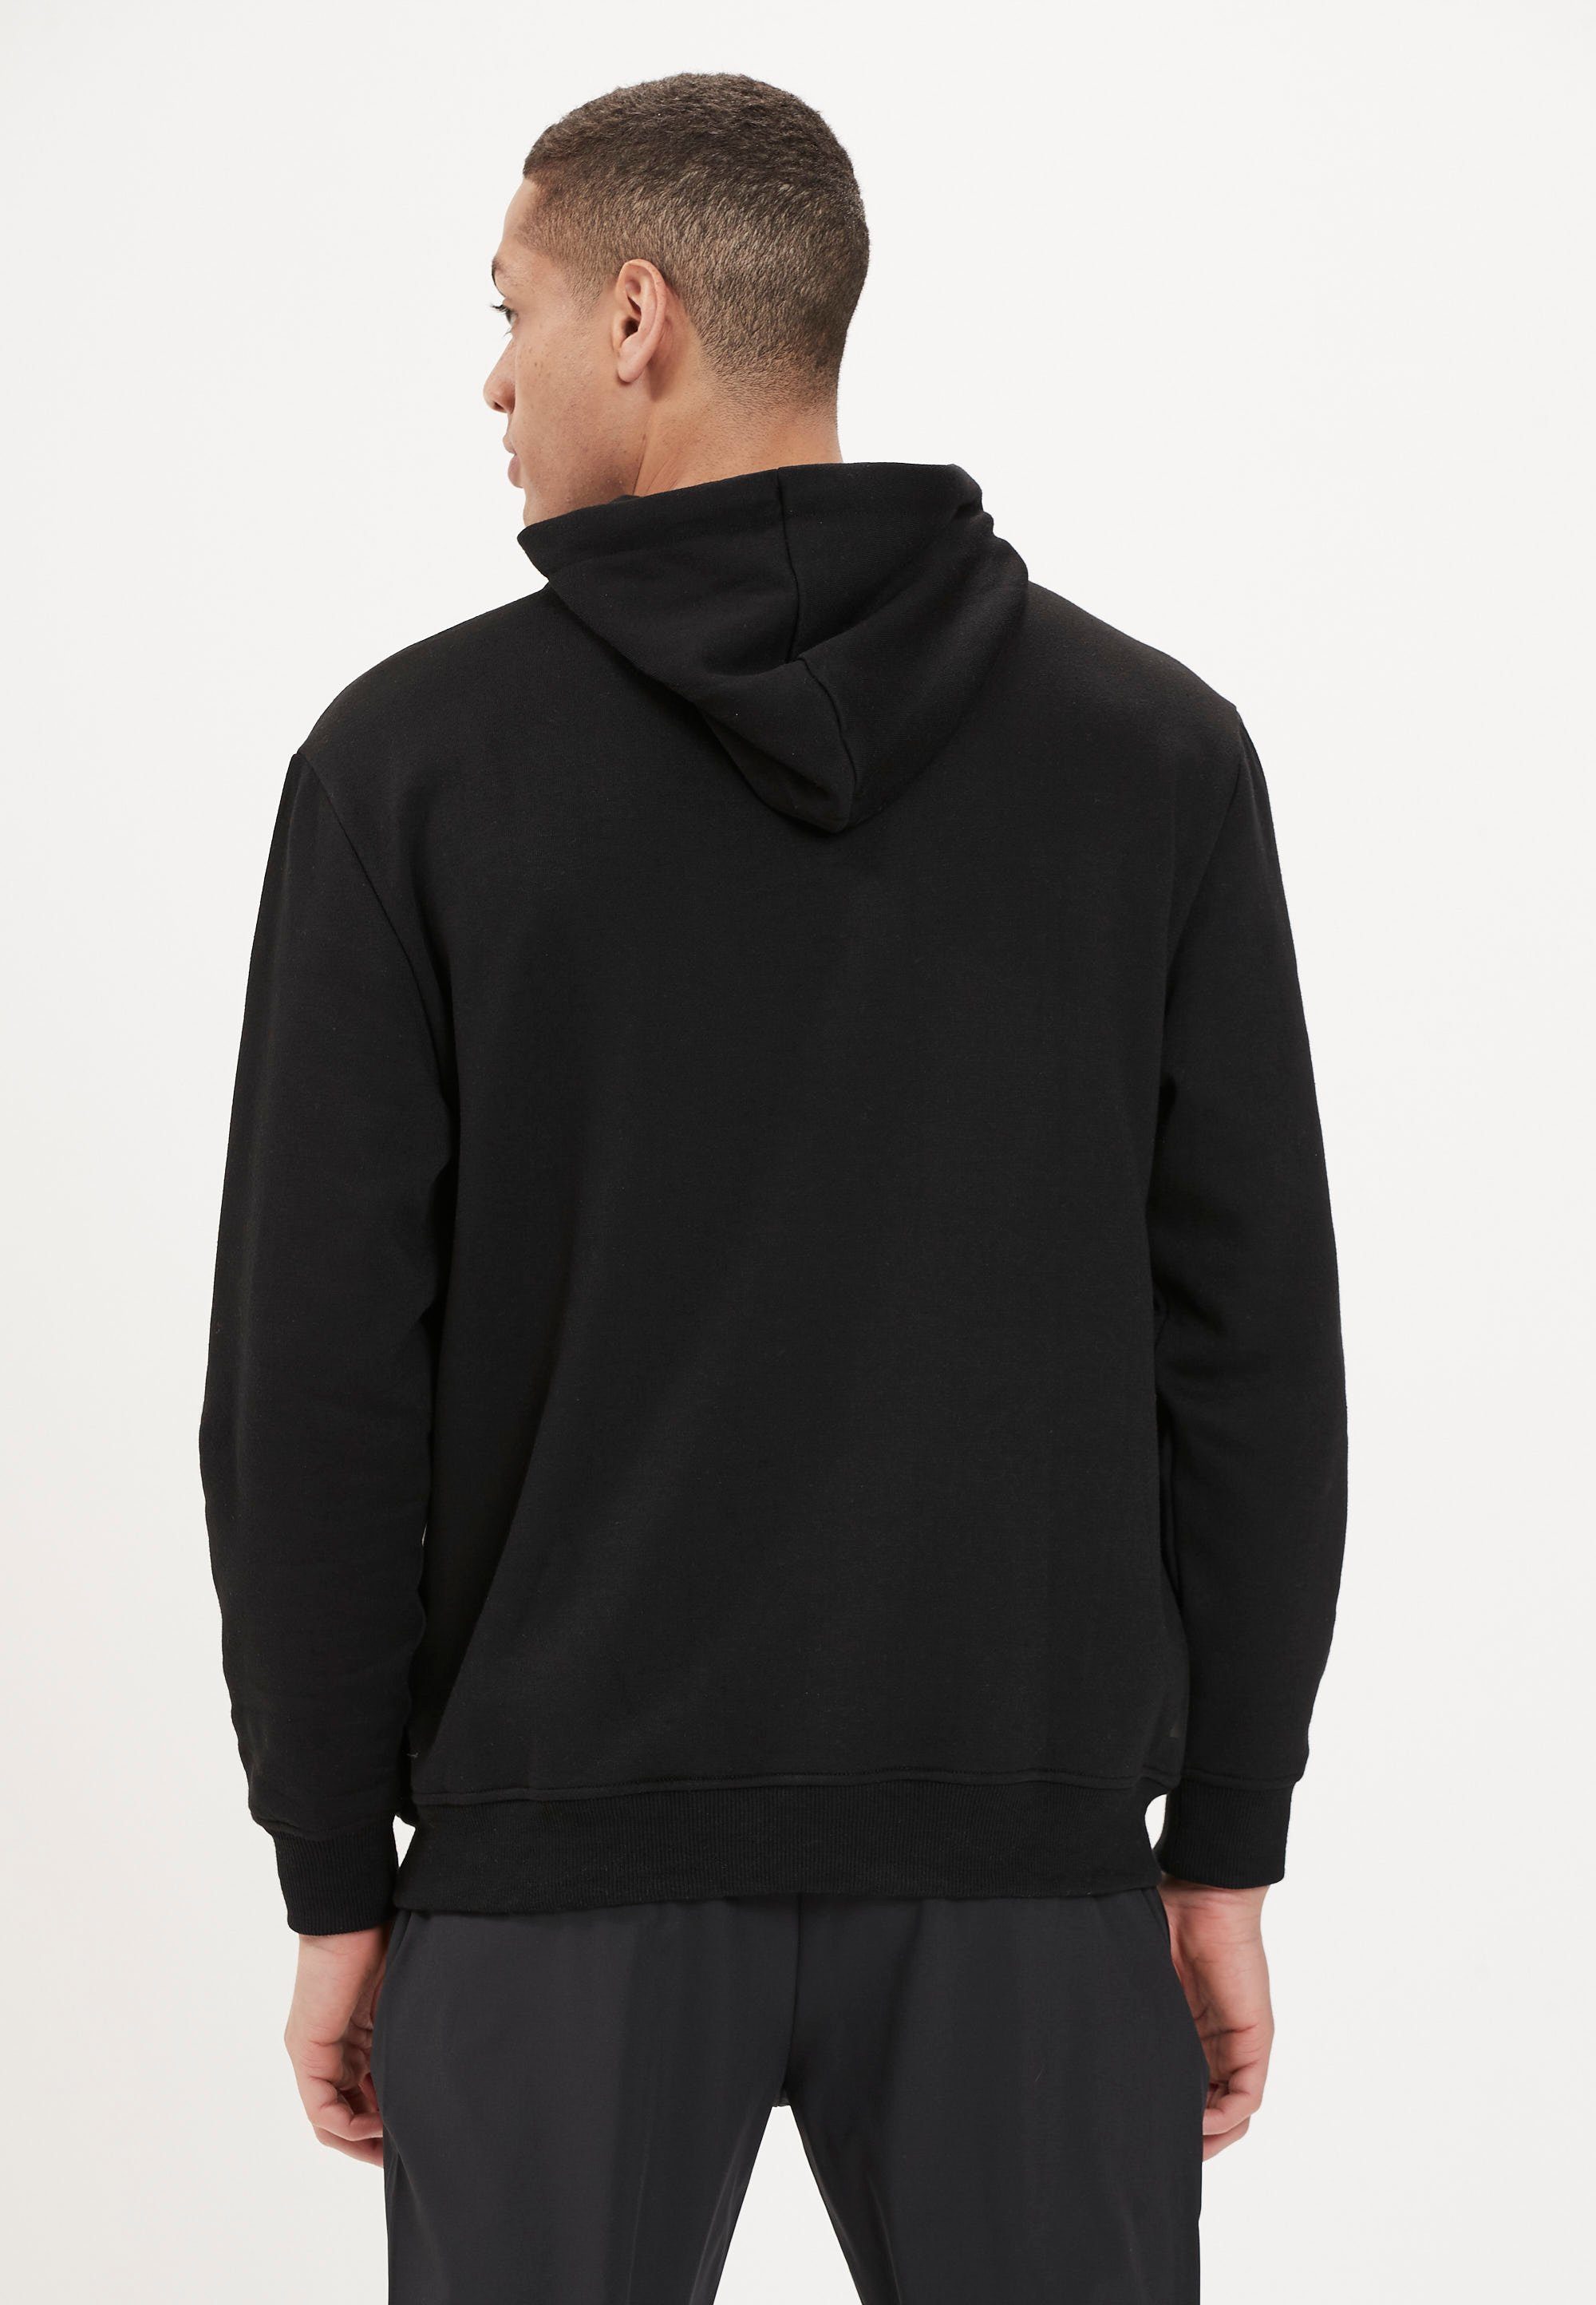 ENDURANCE Kapuzensweatshirt LIONK schnell Qualität in trockender schwarz